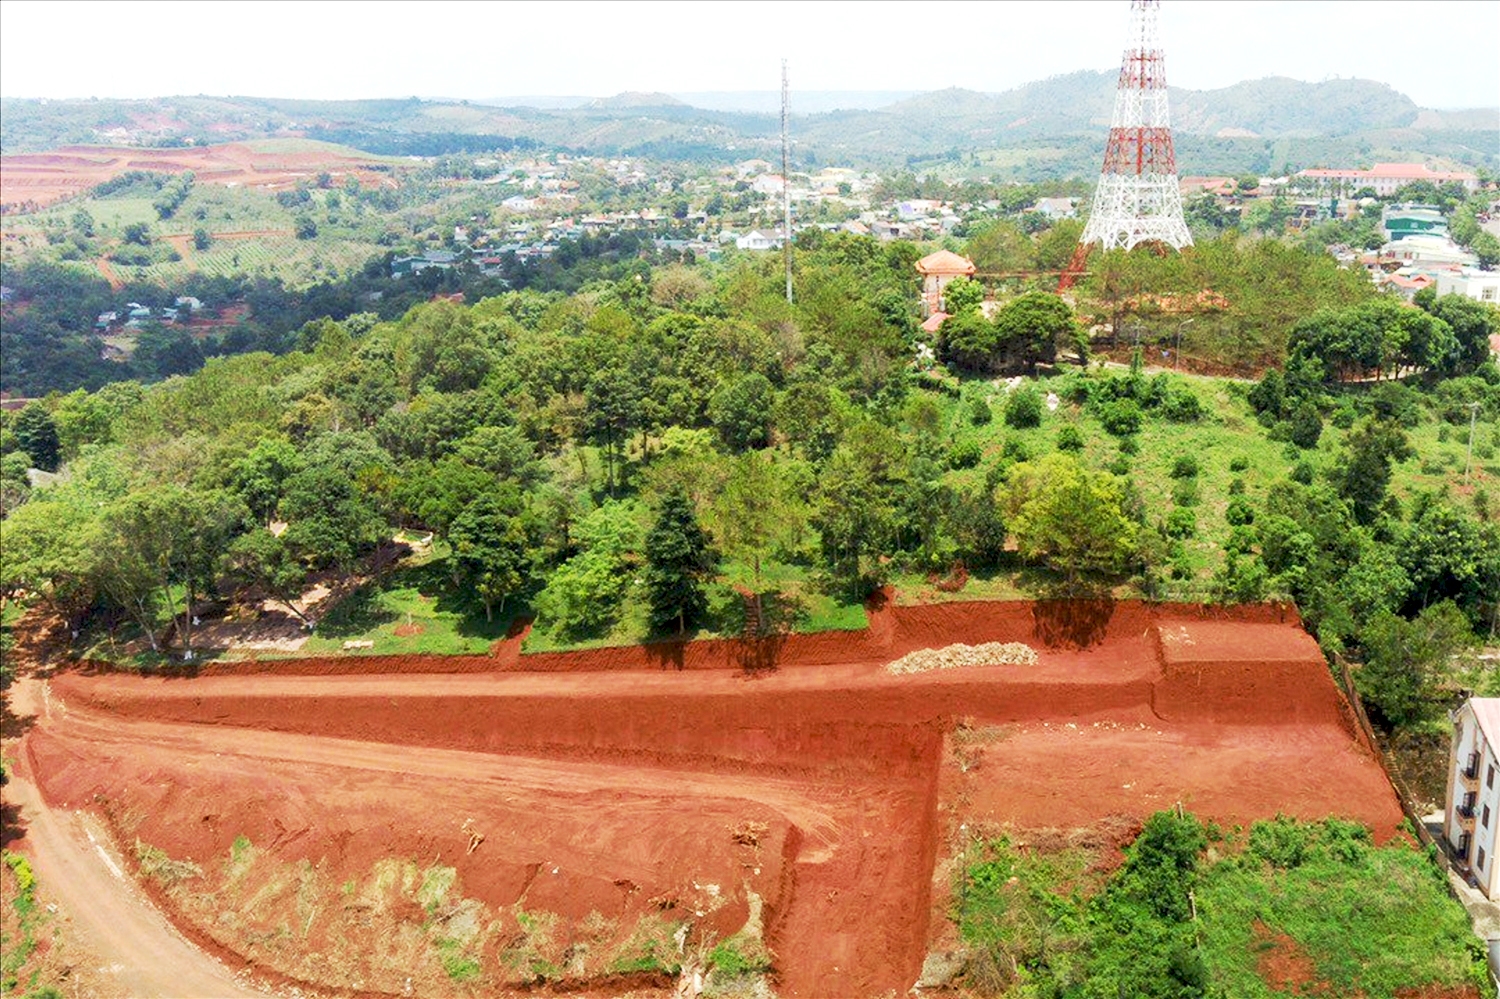  Tình trạng bạt núi, san đồi diễn ra tràn lan ở Đắk Nông